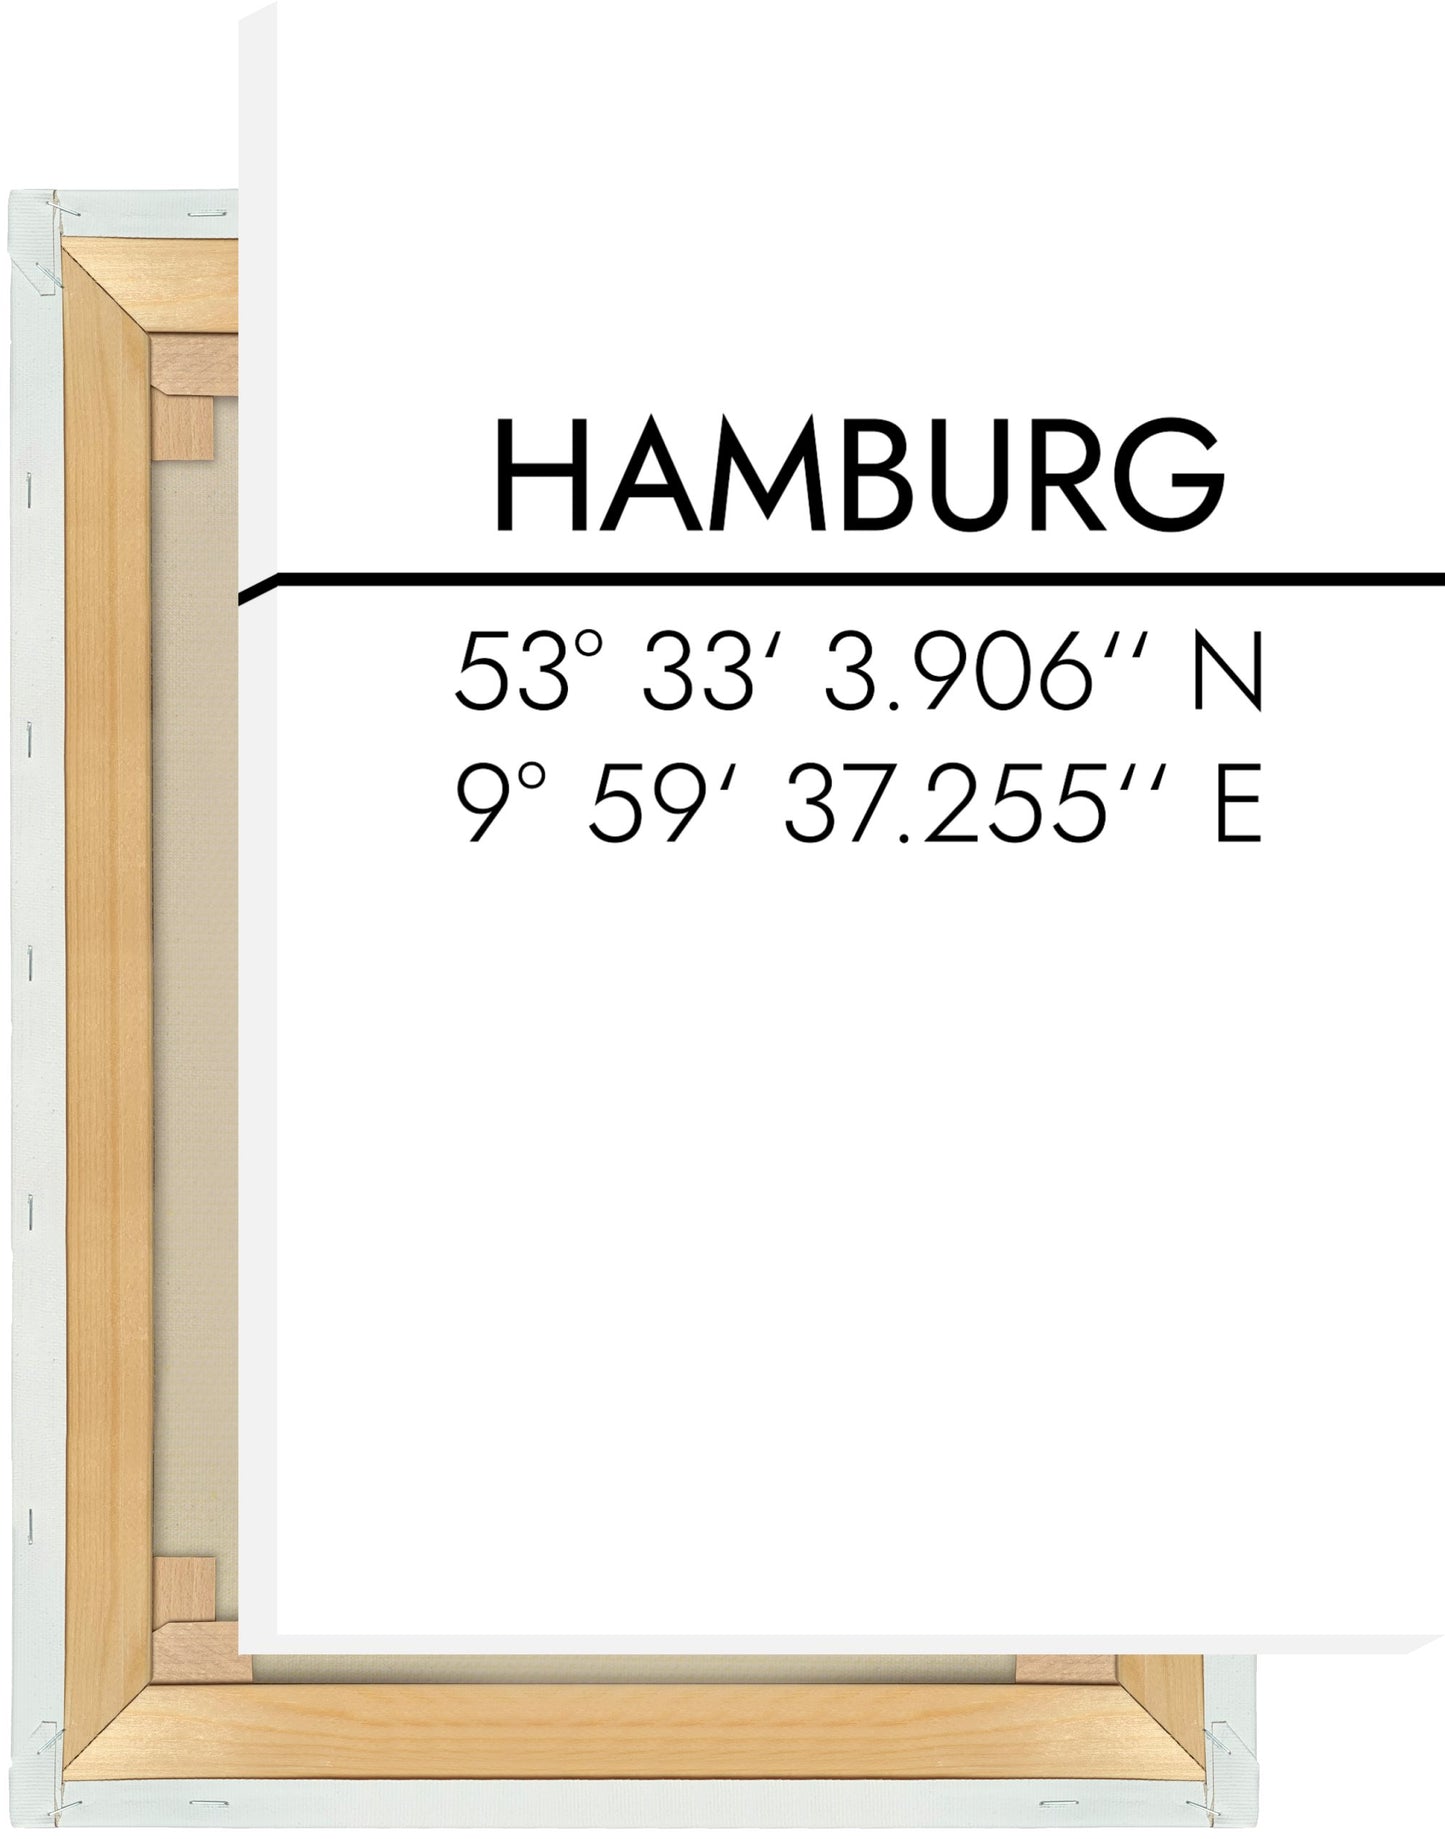 Leinwand Hamburg Koordinaten #2